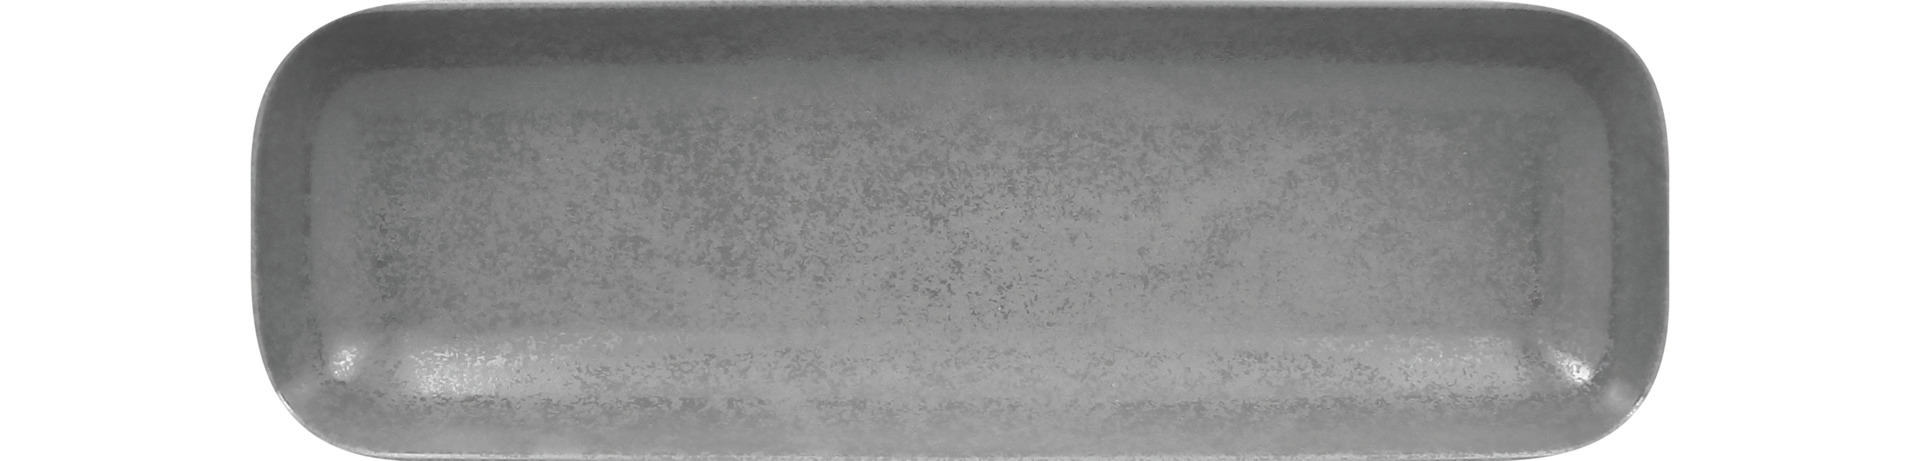 Schale rechteckig 330 x 110 mm grau